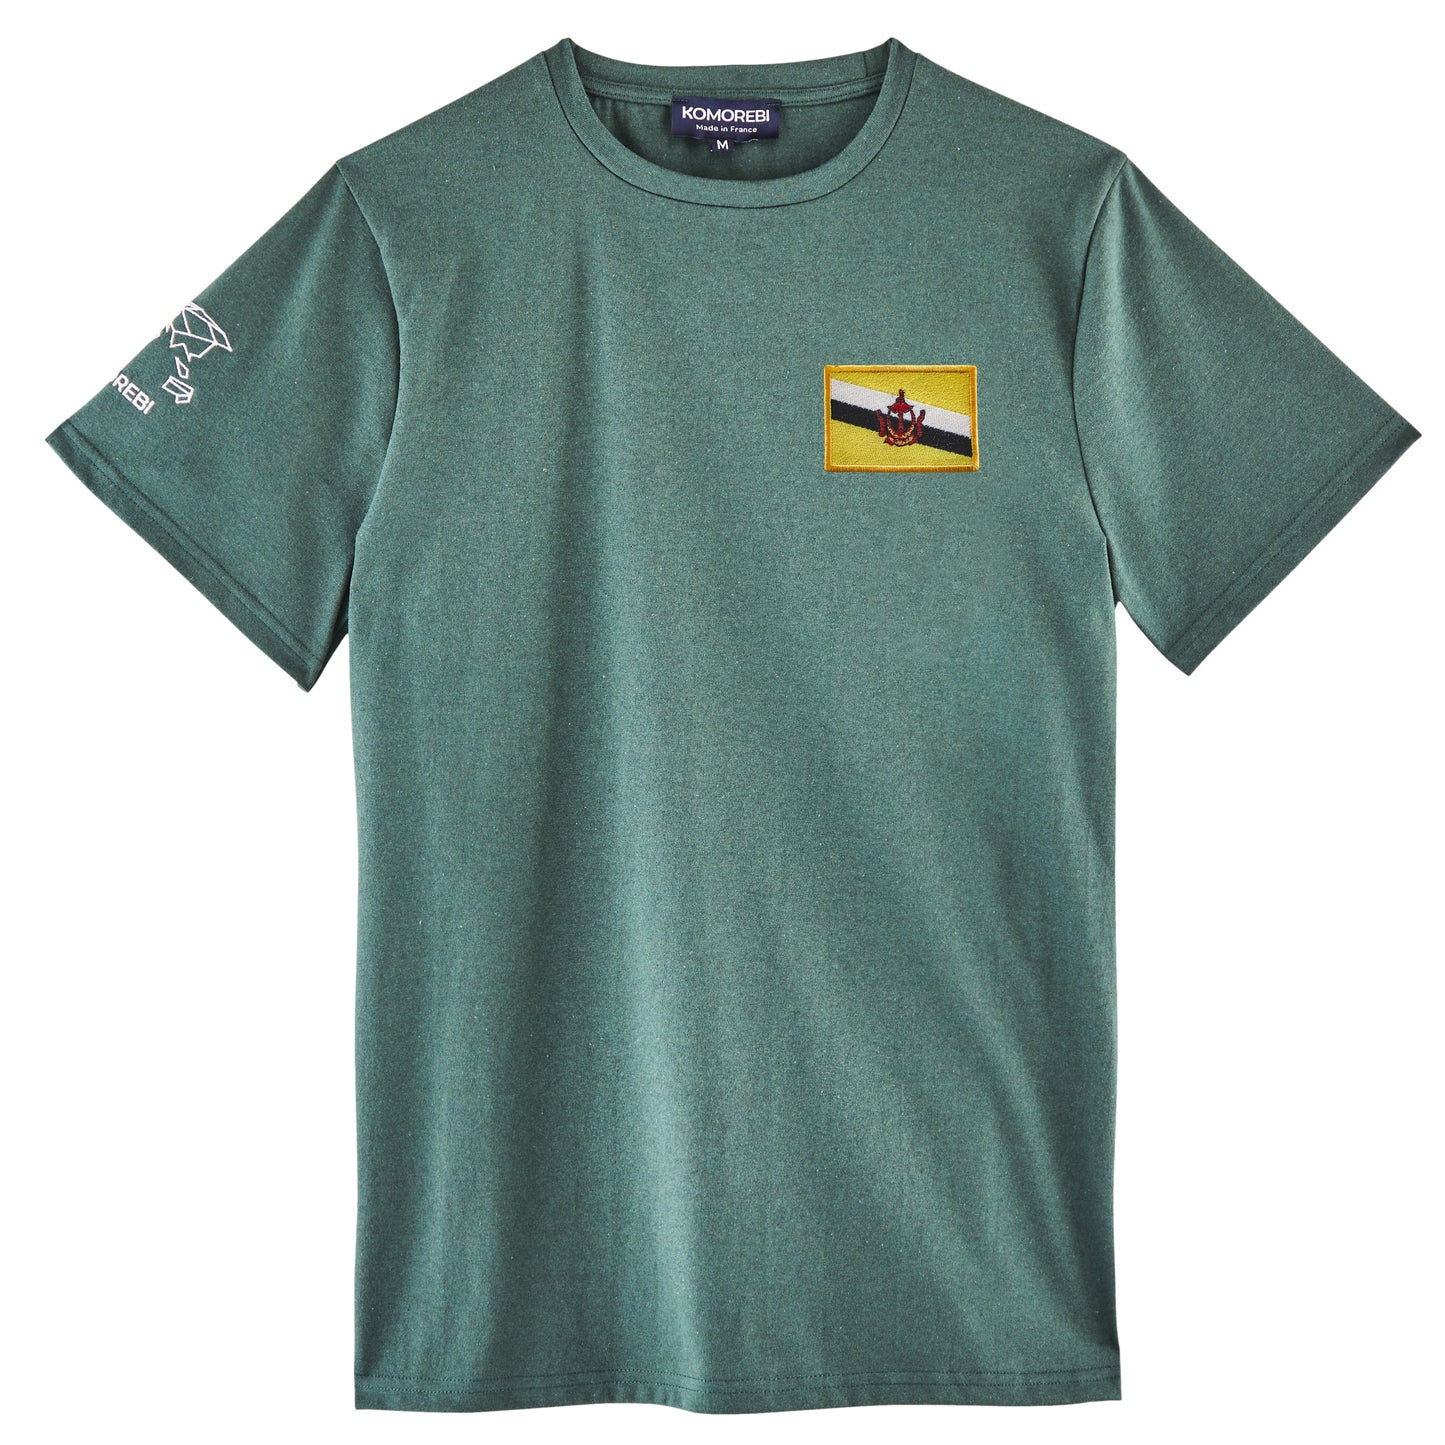 Brunei • T-shirt